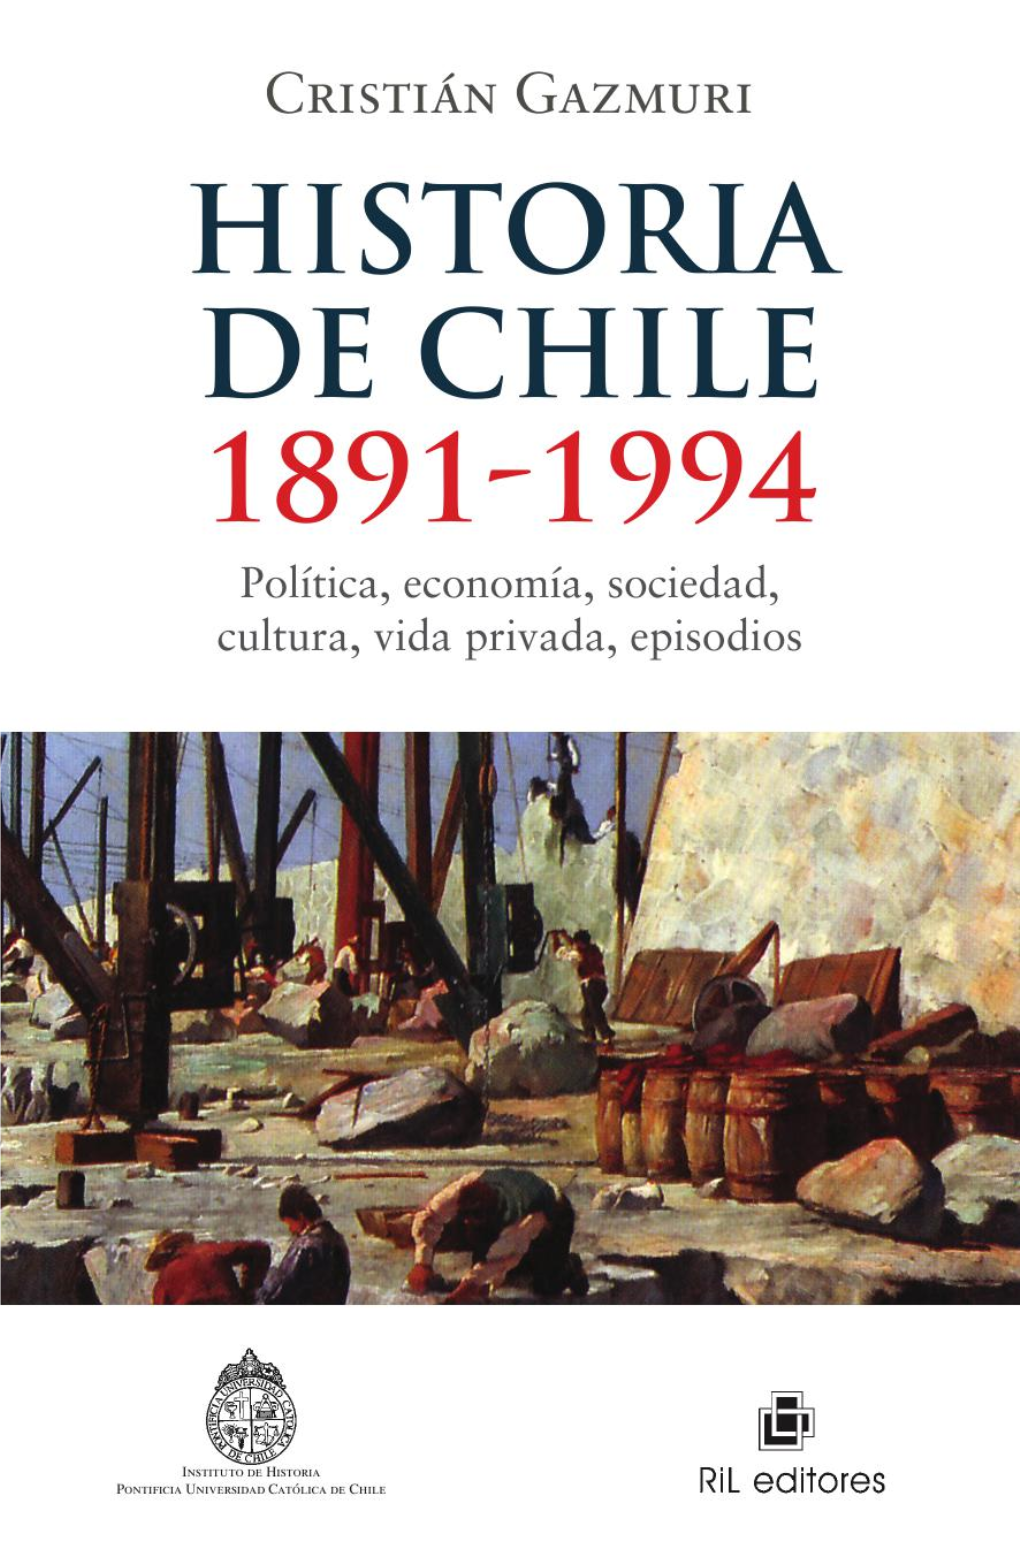 Historia De Chile 1891-1994 RIL Editores Bibliodiversidad Cristián Gazmuri